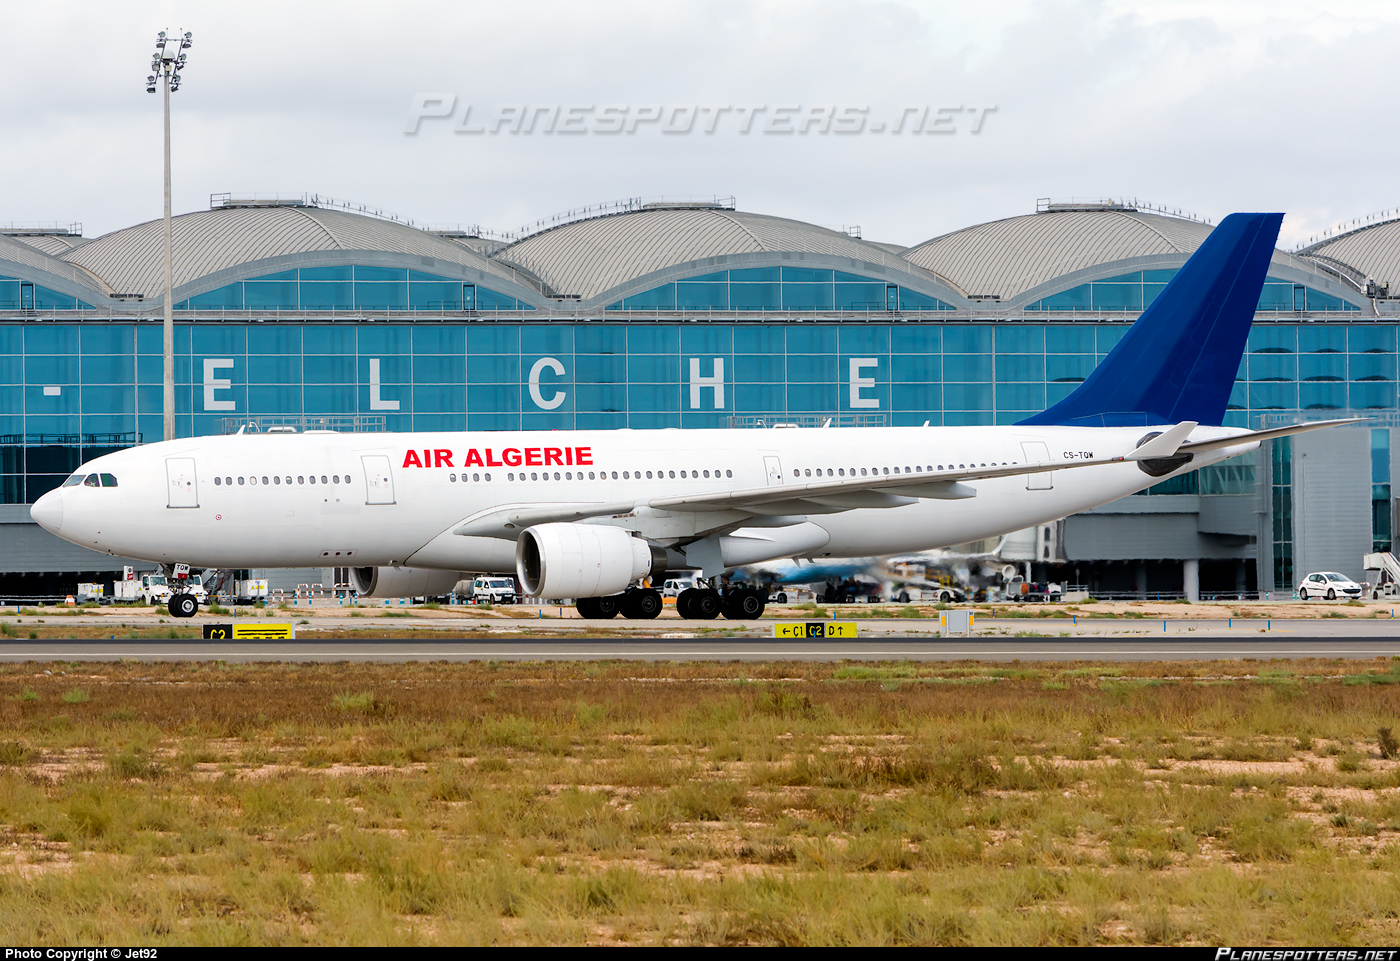 L'avion d'Air Algérie, ici le 16/08/2015 à l'aéroport d'Alicante, Espagne (PH/Jet92)